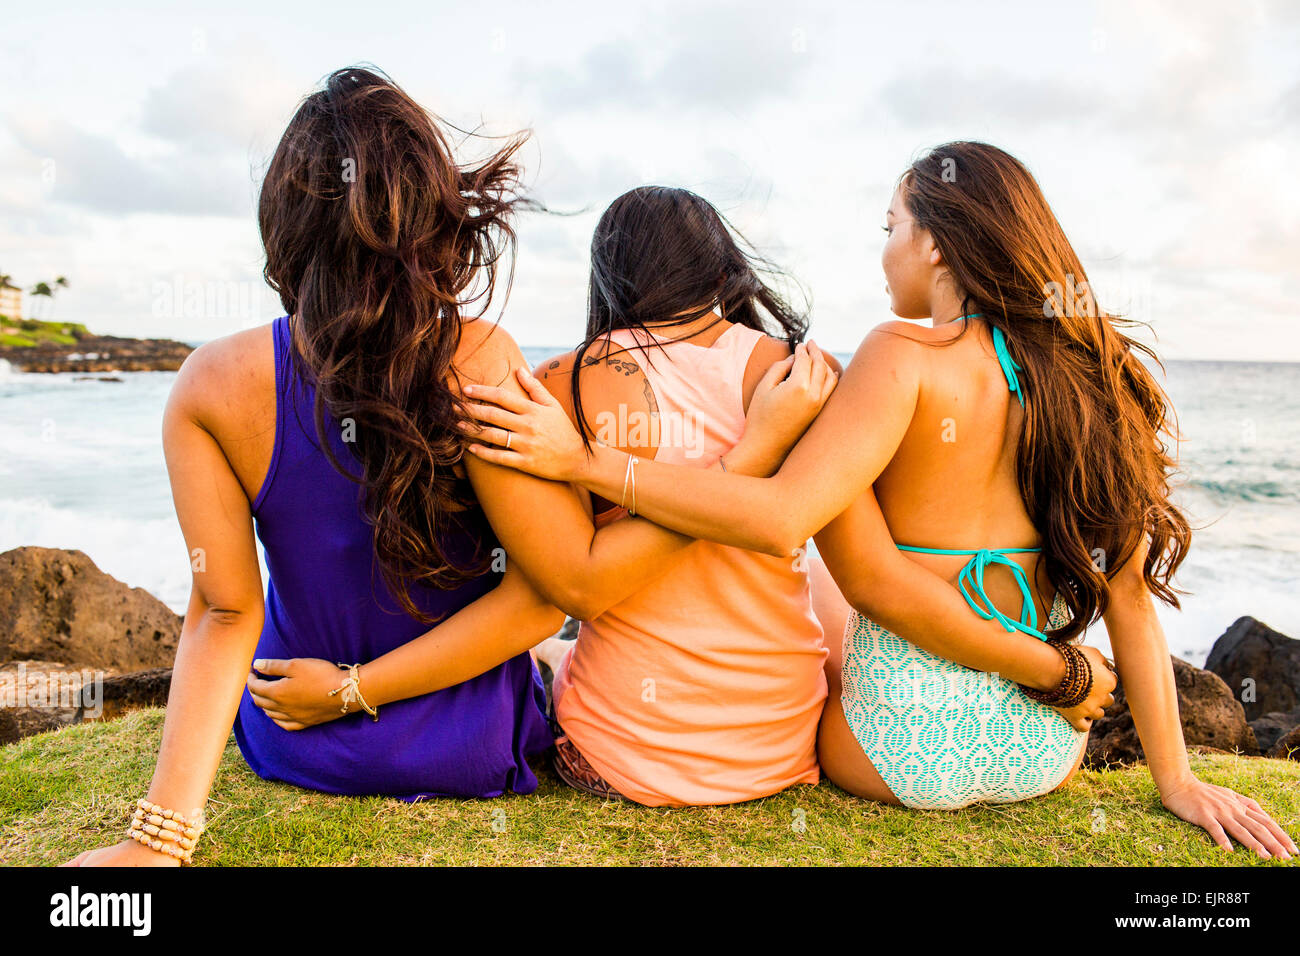 Les Insulaires du Pacifique, près de beach women hugging Banque D'Images